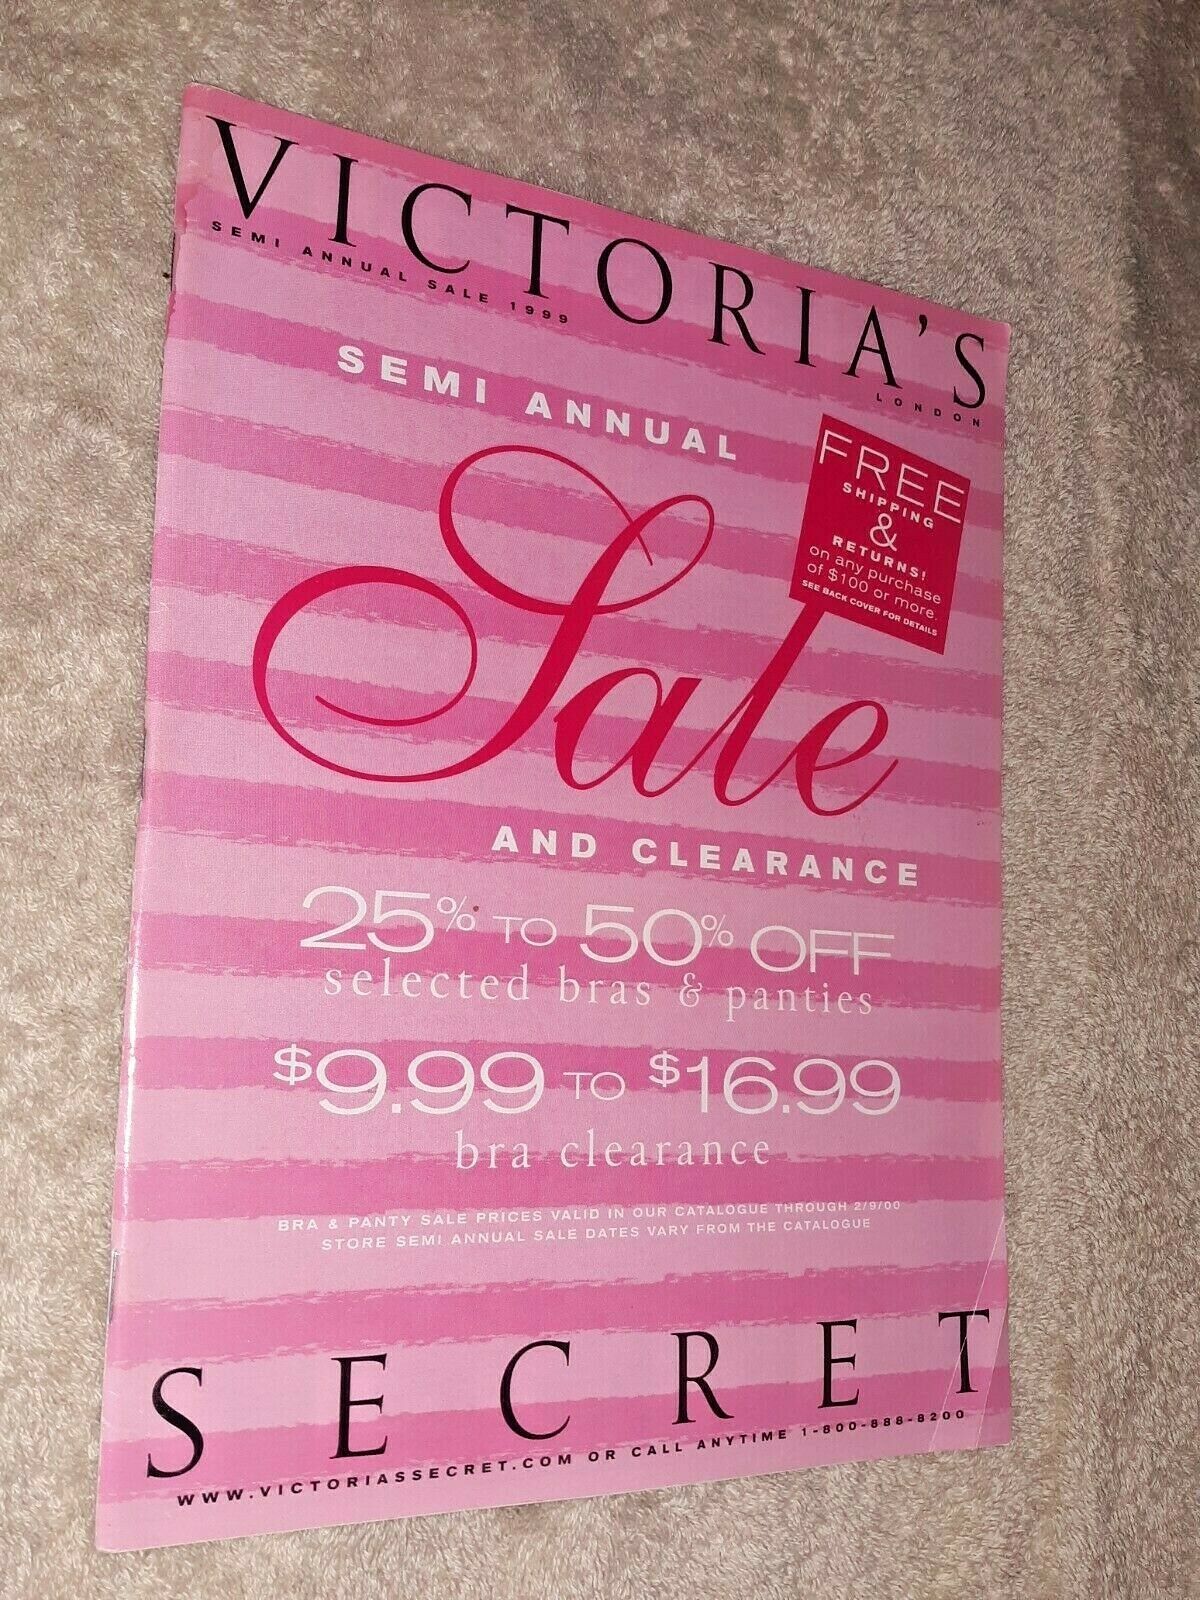 Victoria's Secret London Women's Fashion Catalog - "semi Annual Sale 1999" Issue